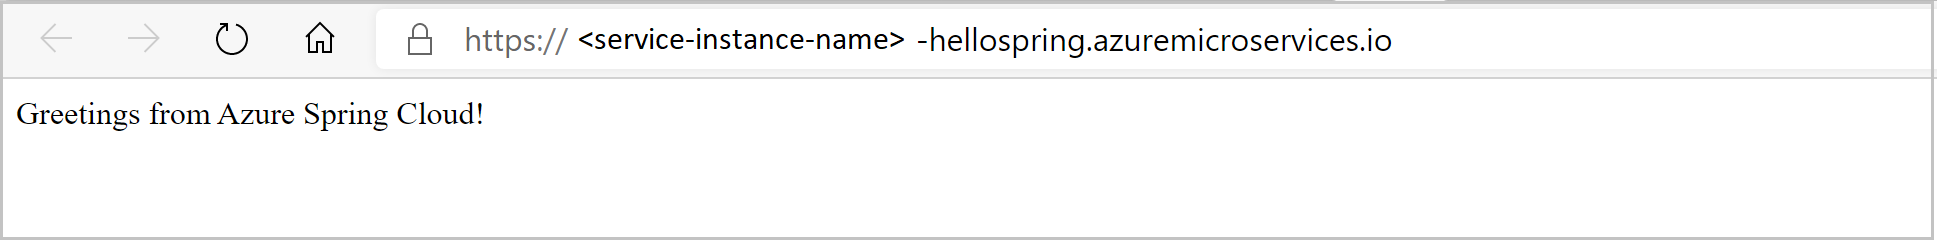 Zrzut ekranu przedstawiający aplikację hello spring, jak pokazano w przeglądarce.